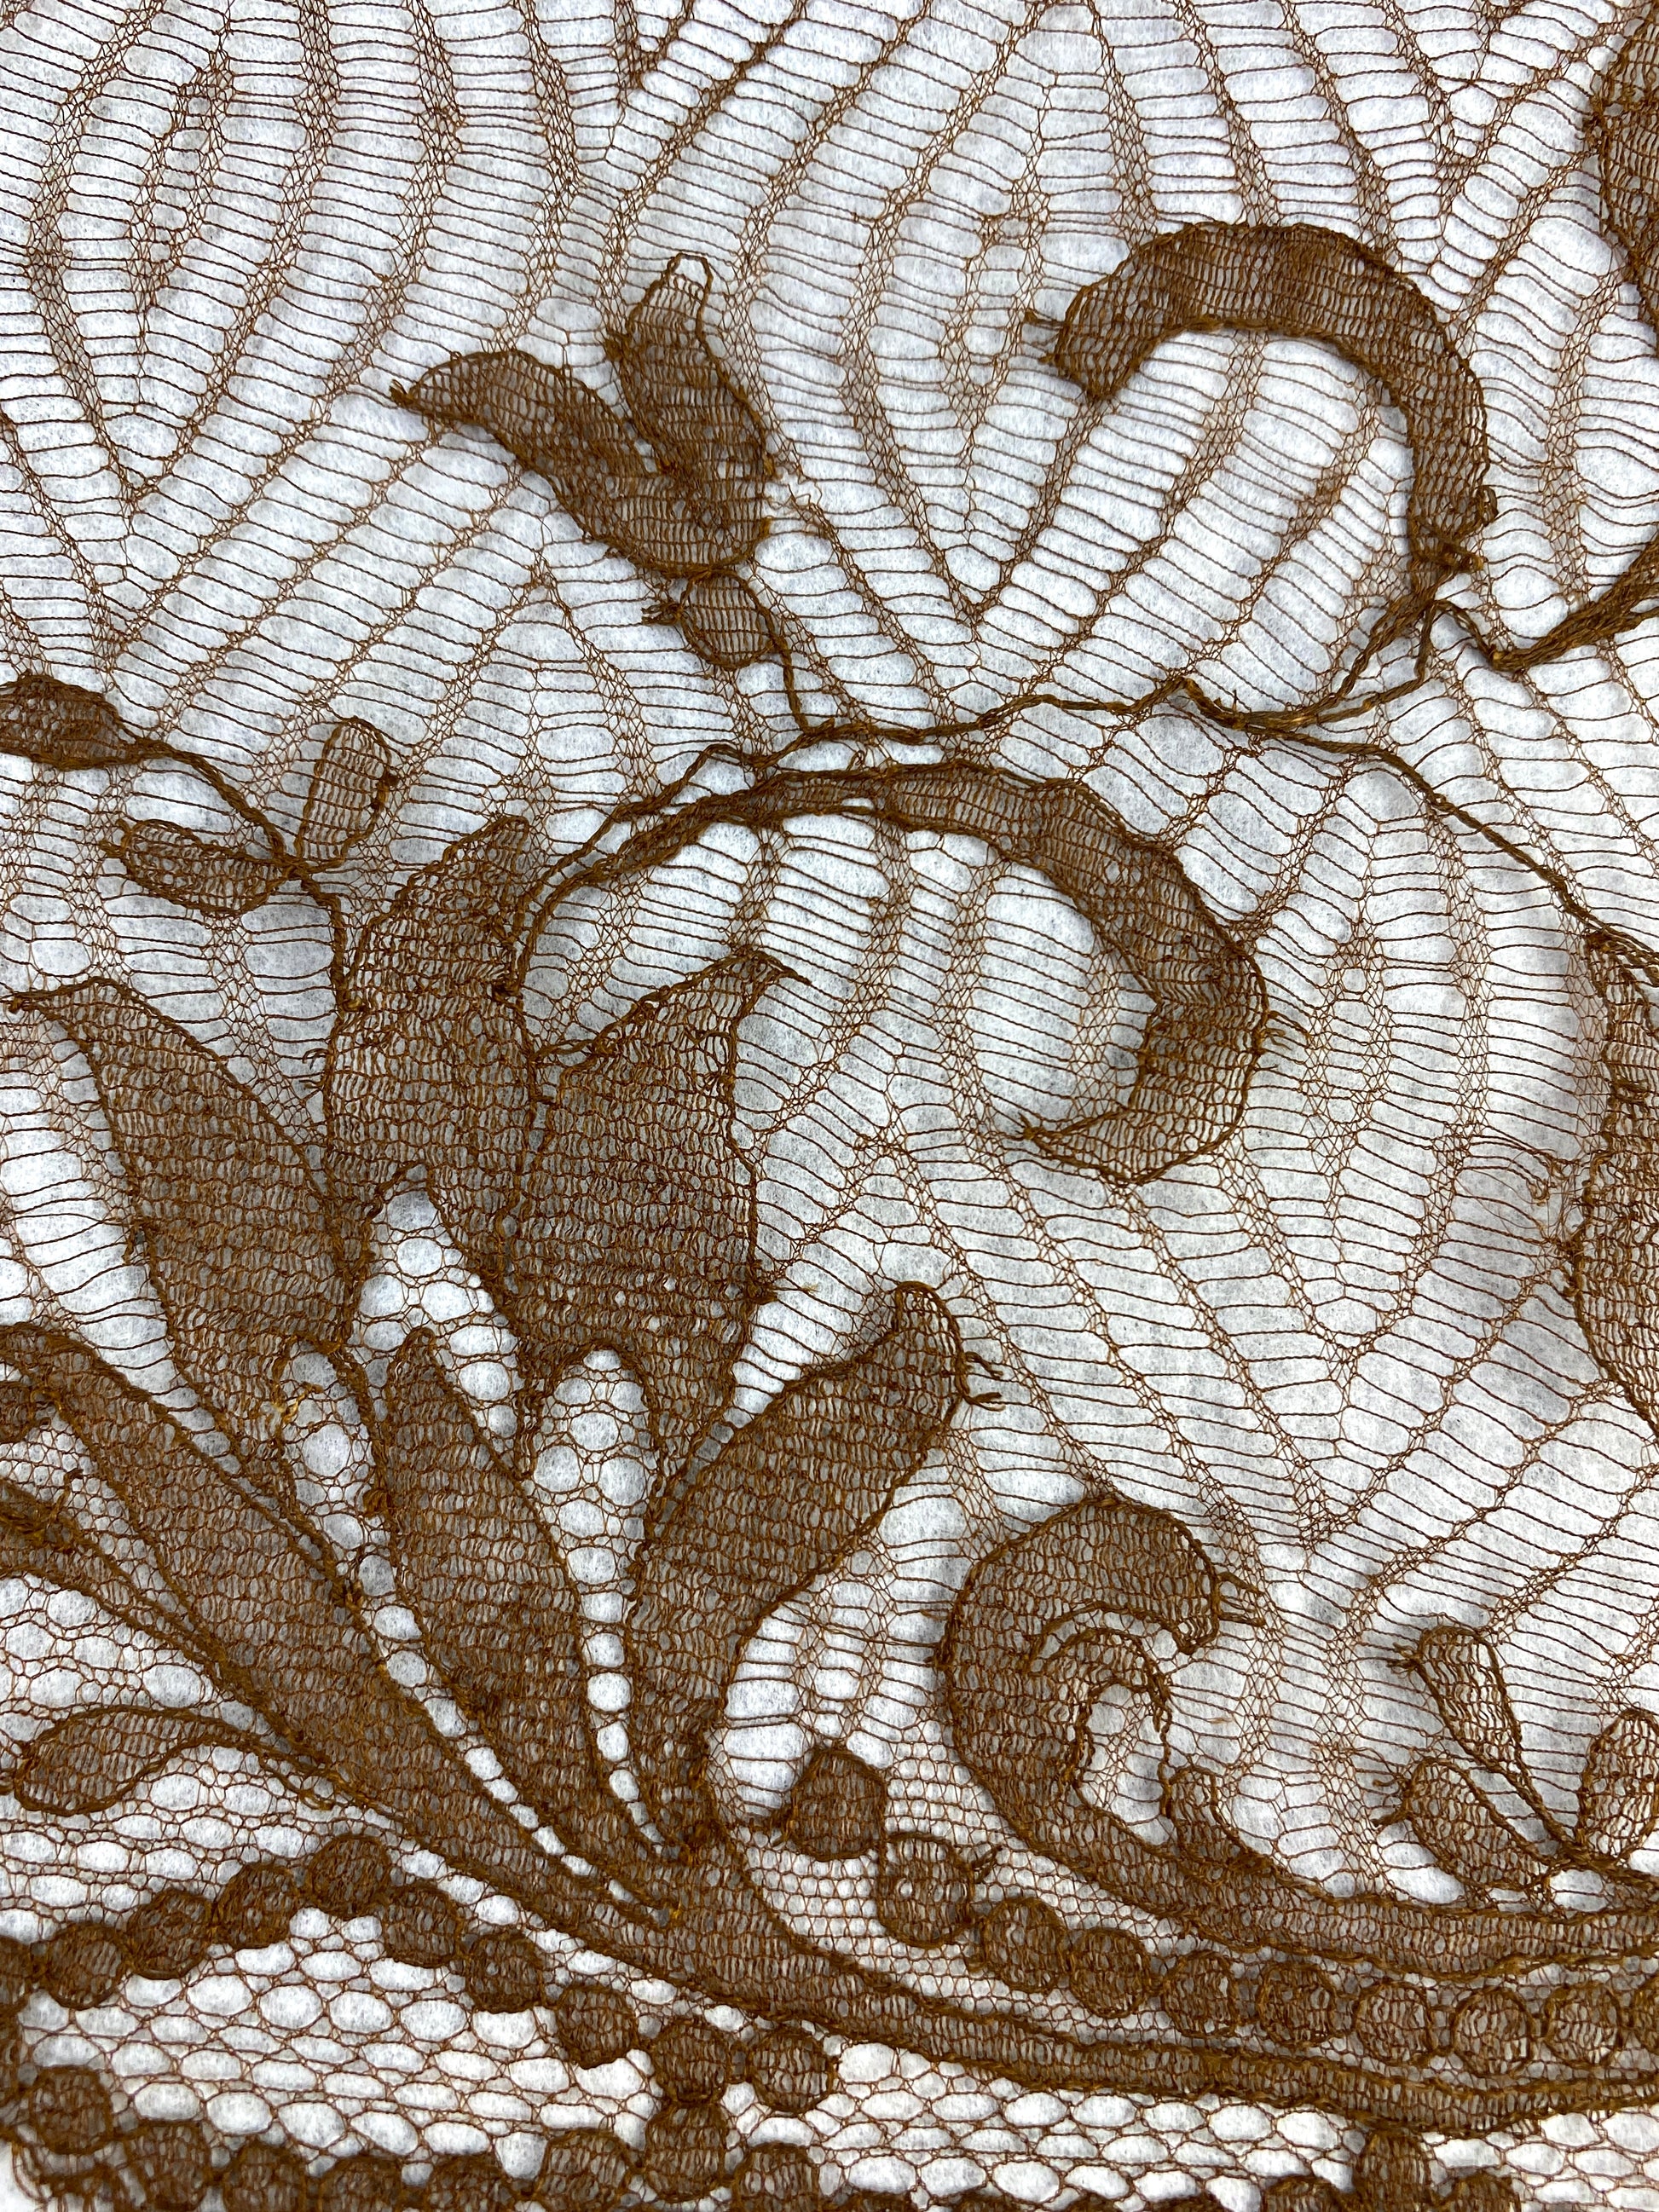 Antique Victorian Brown Lace Piece, 57x21"